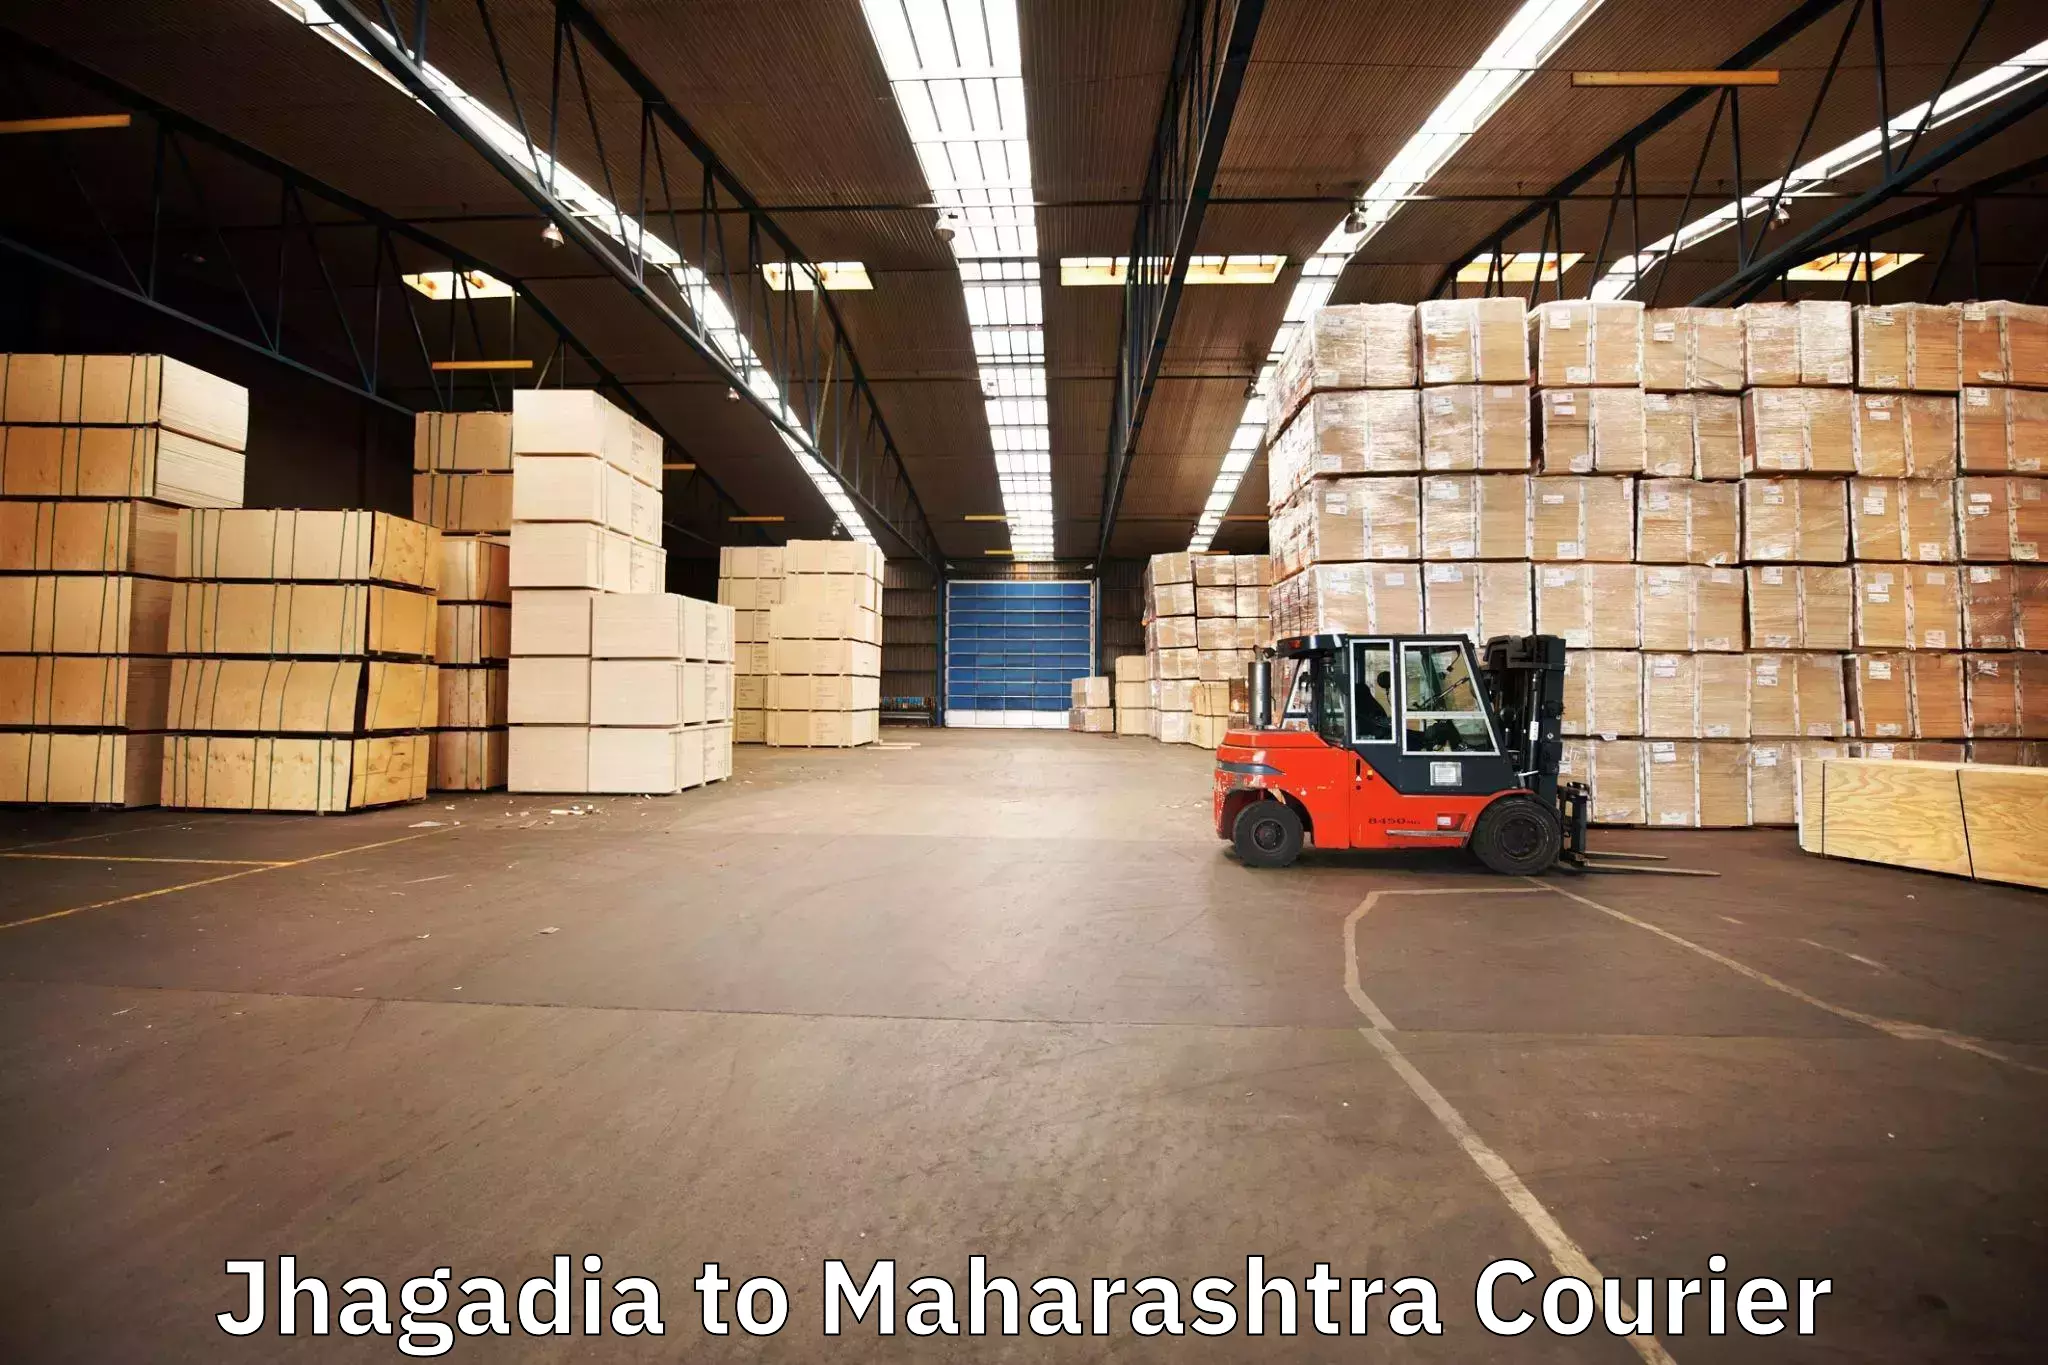 Furniture transport company Jhagadia to Maharashtra